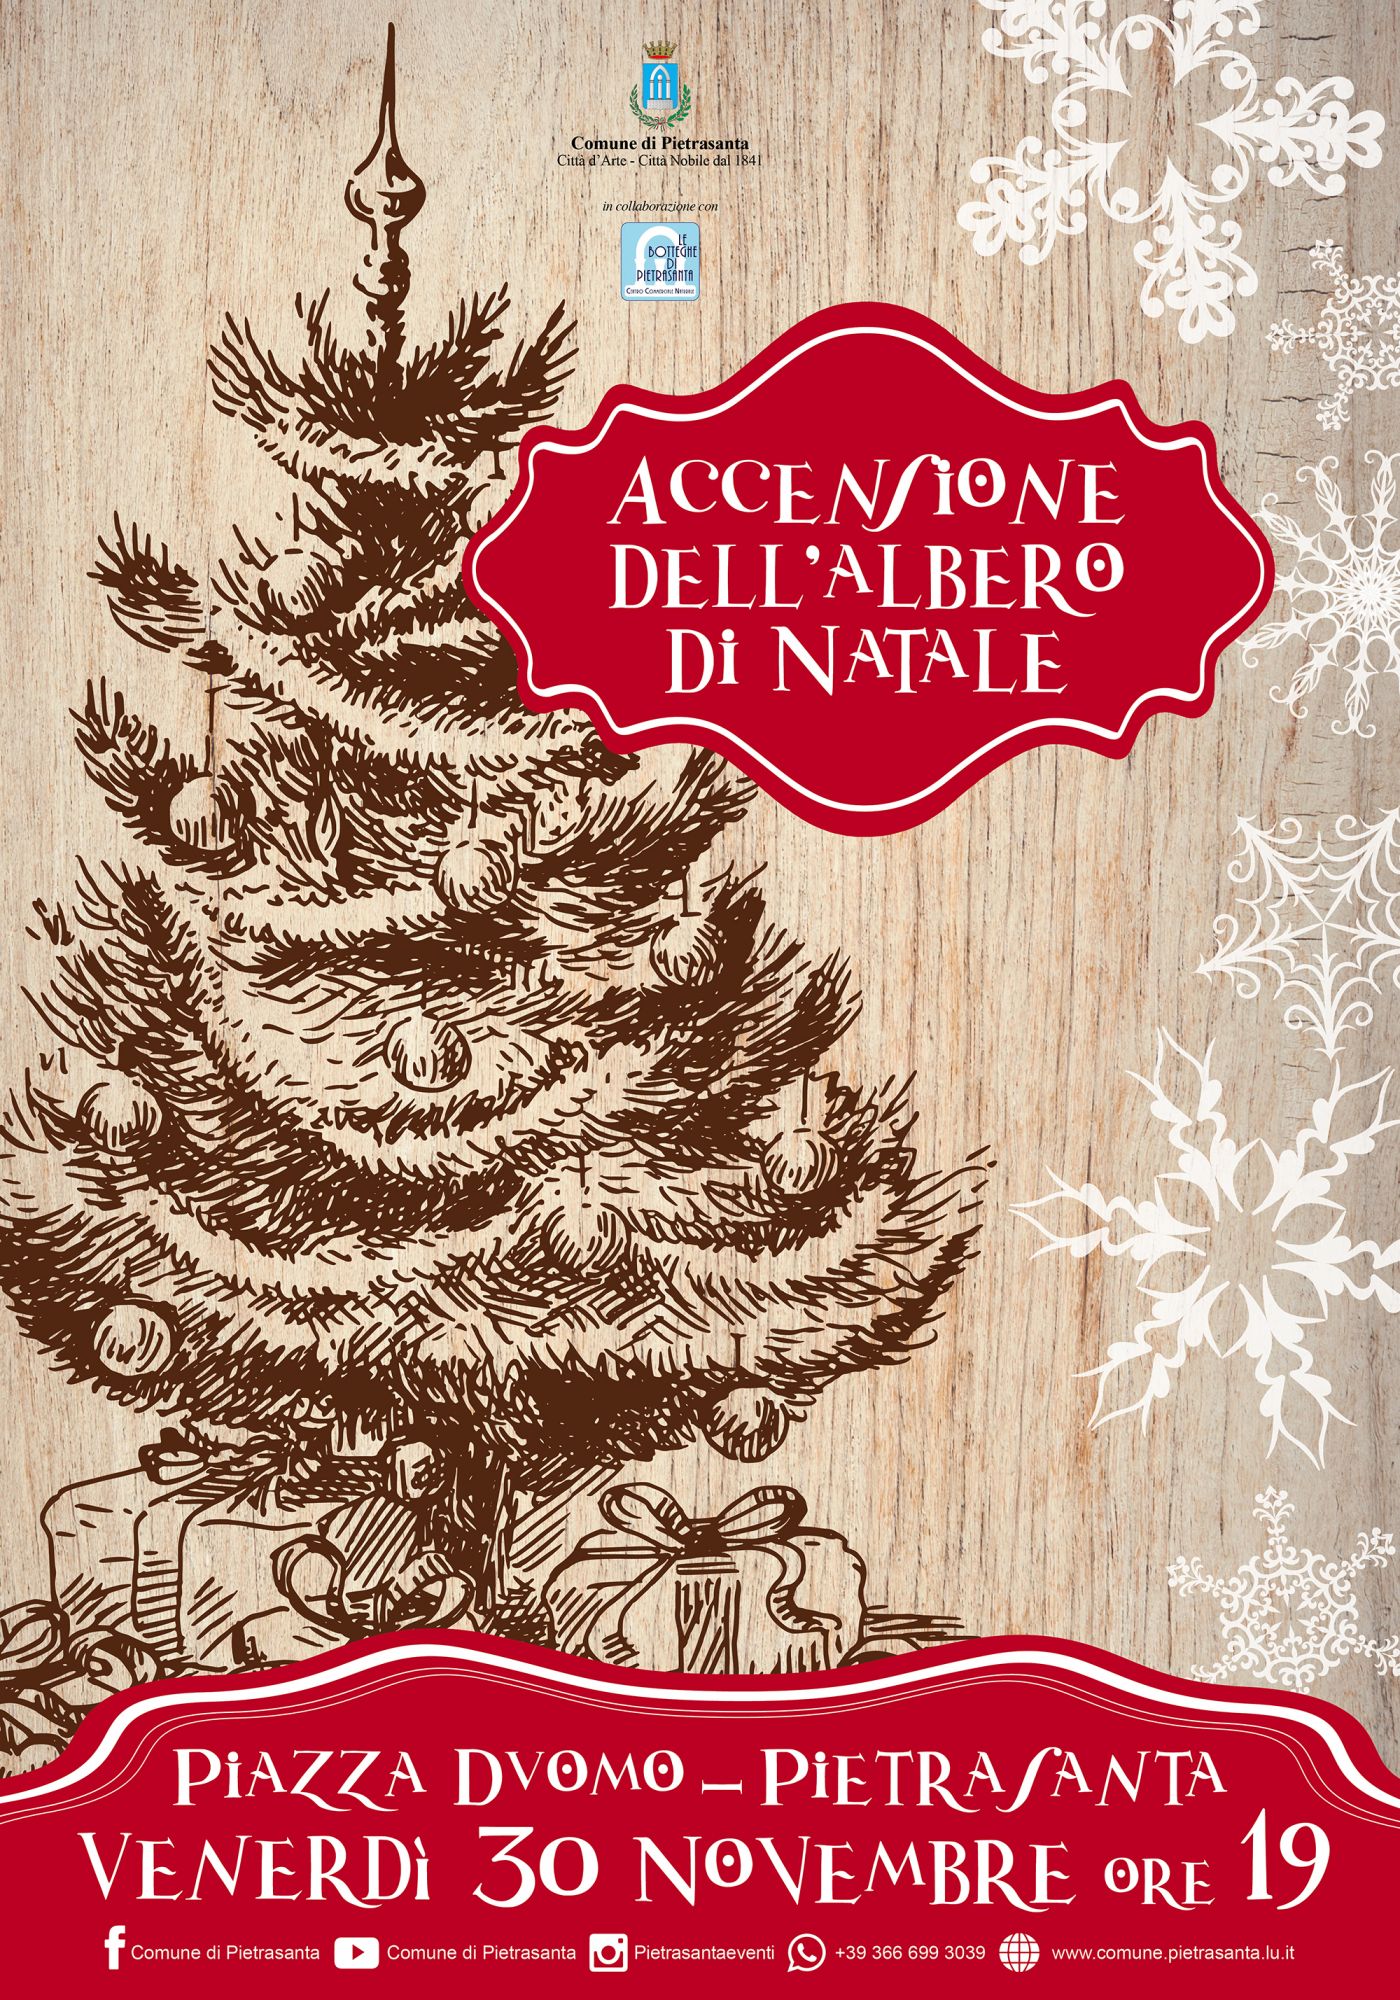 Natale a Pietrasanta, festa in Piazza Duomo per l’accensione dell’abete